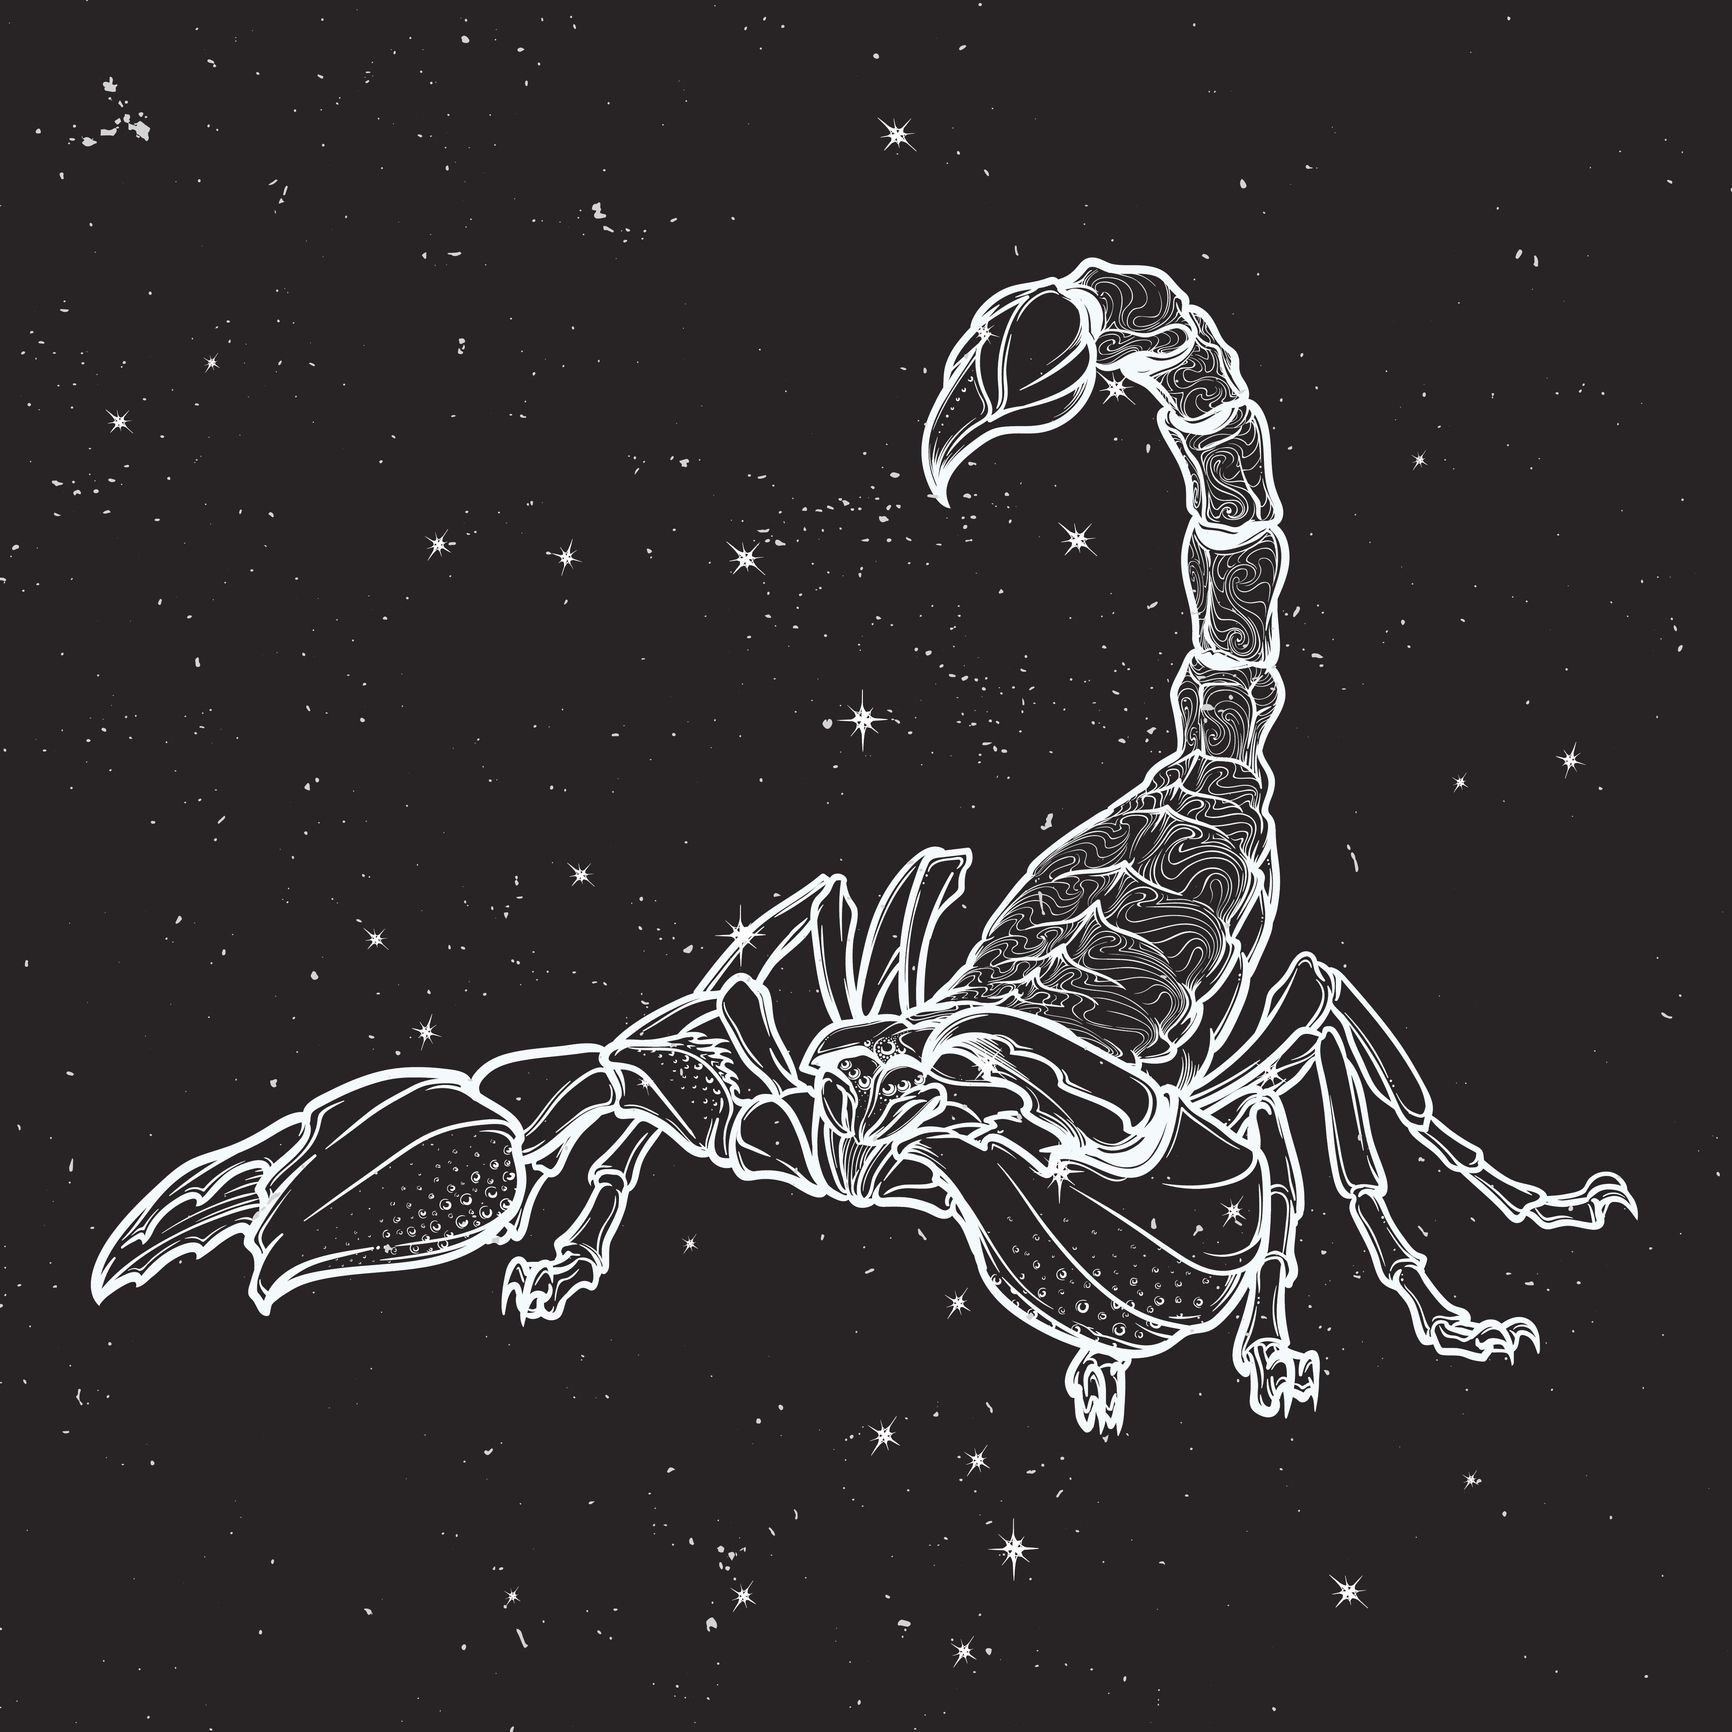 Созвездие скорпиона на черном фоне